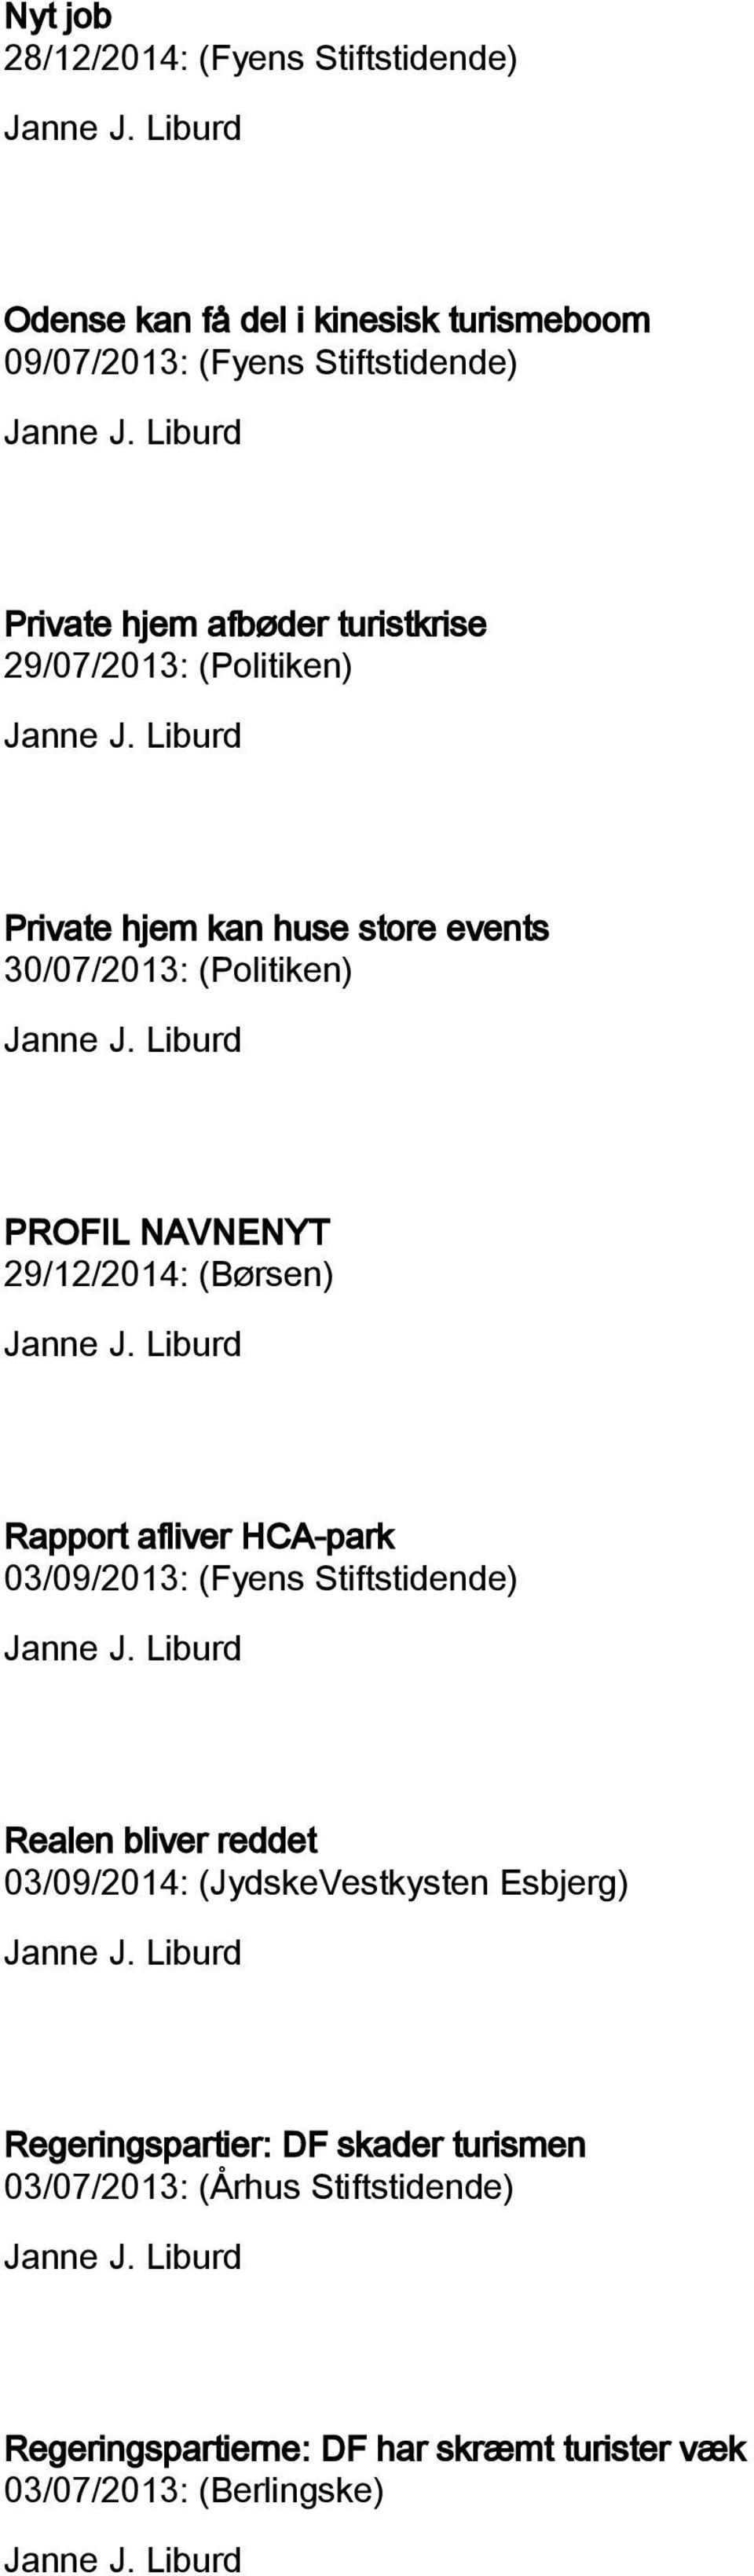 (Børsen) Rapport afliver HCA-park 03/09/2013: (Fyens Stiftstidende) Realen bliver reddet 03/09/2014: (JydskeVestkysten Esbjerg)